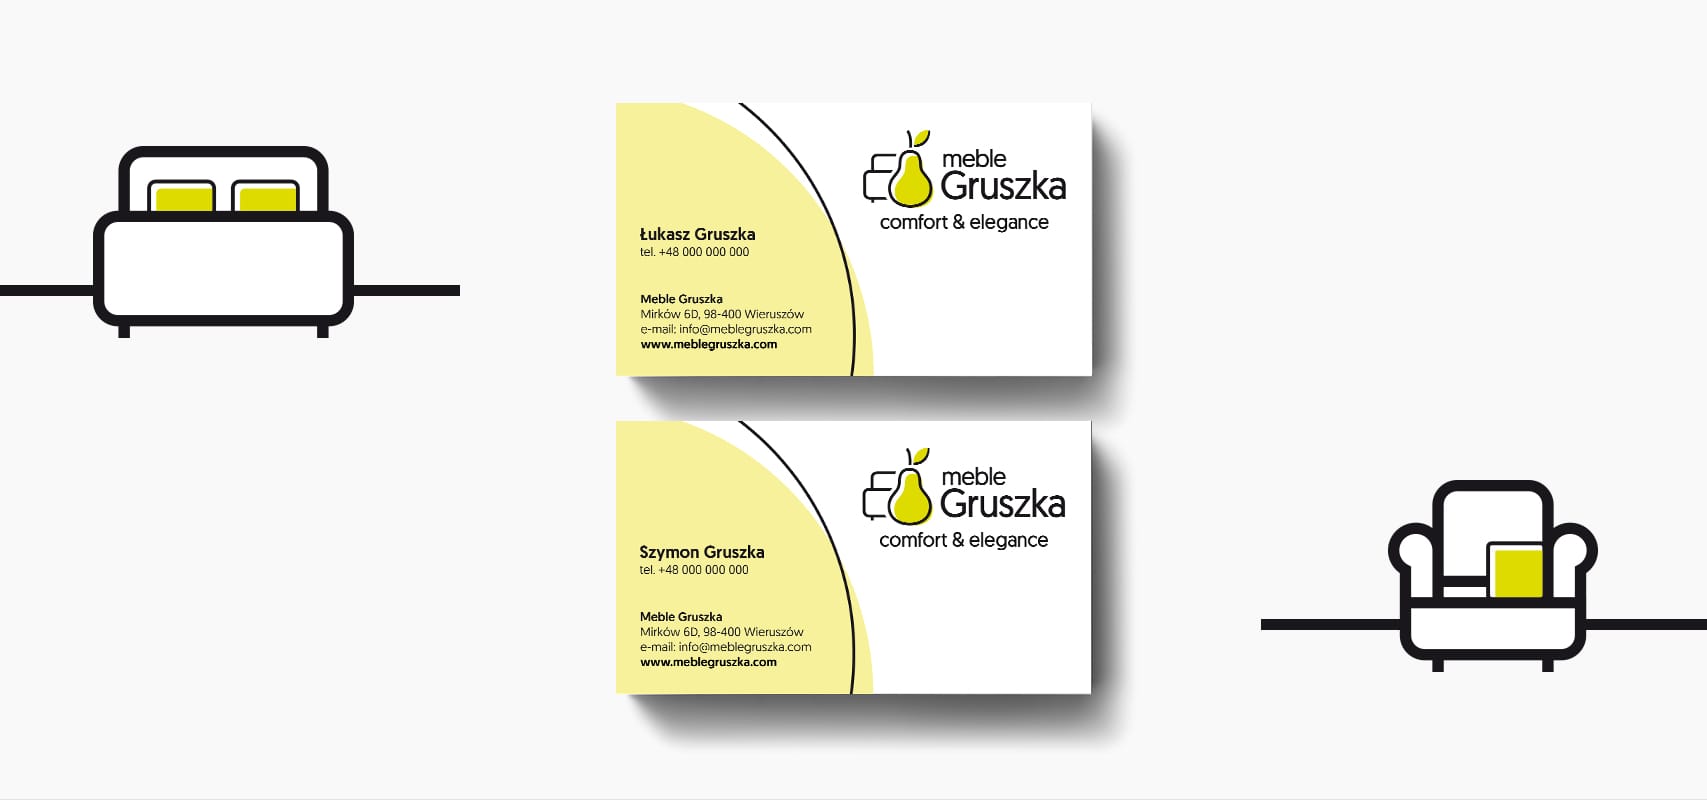 Projektowanie identyfikacji wizualnej dla fabryki mebli Gruszka księi znaku rebranding logo akcydensy firmowe Agencja brandingowa Moweli Creative Warszawa Kraków Wrocław